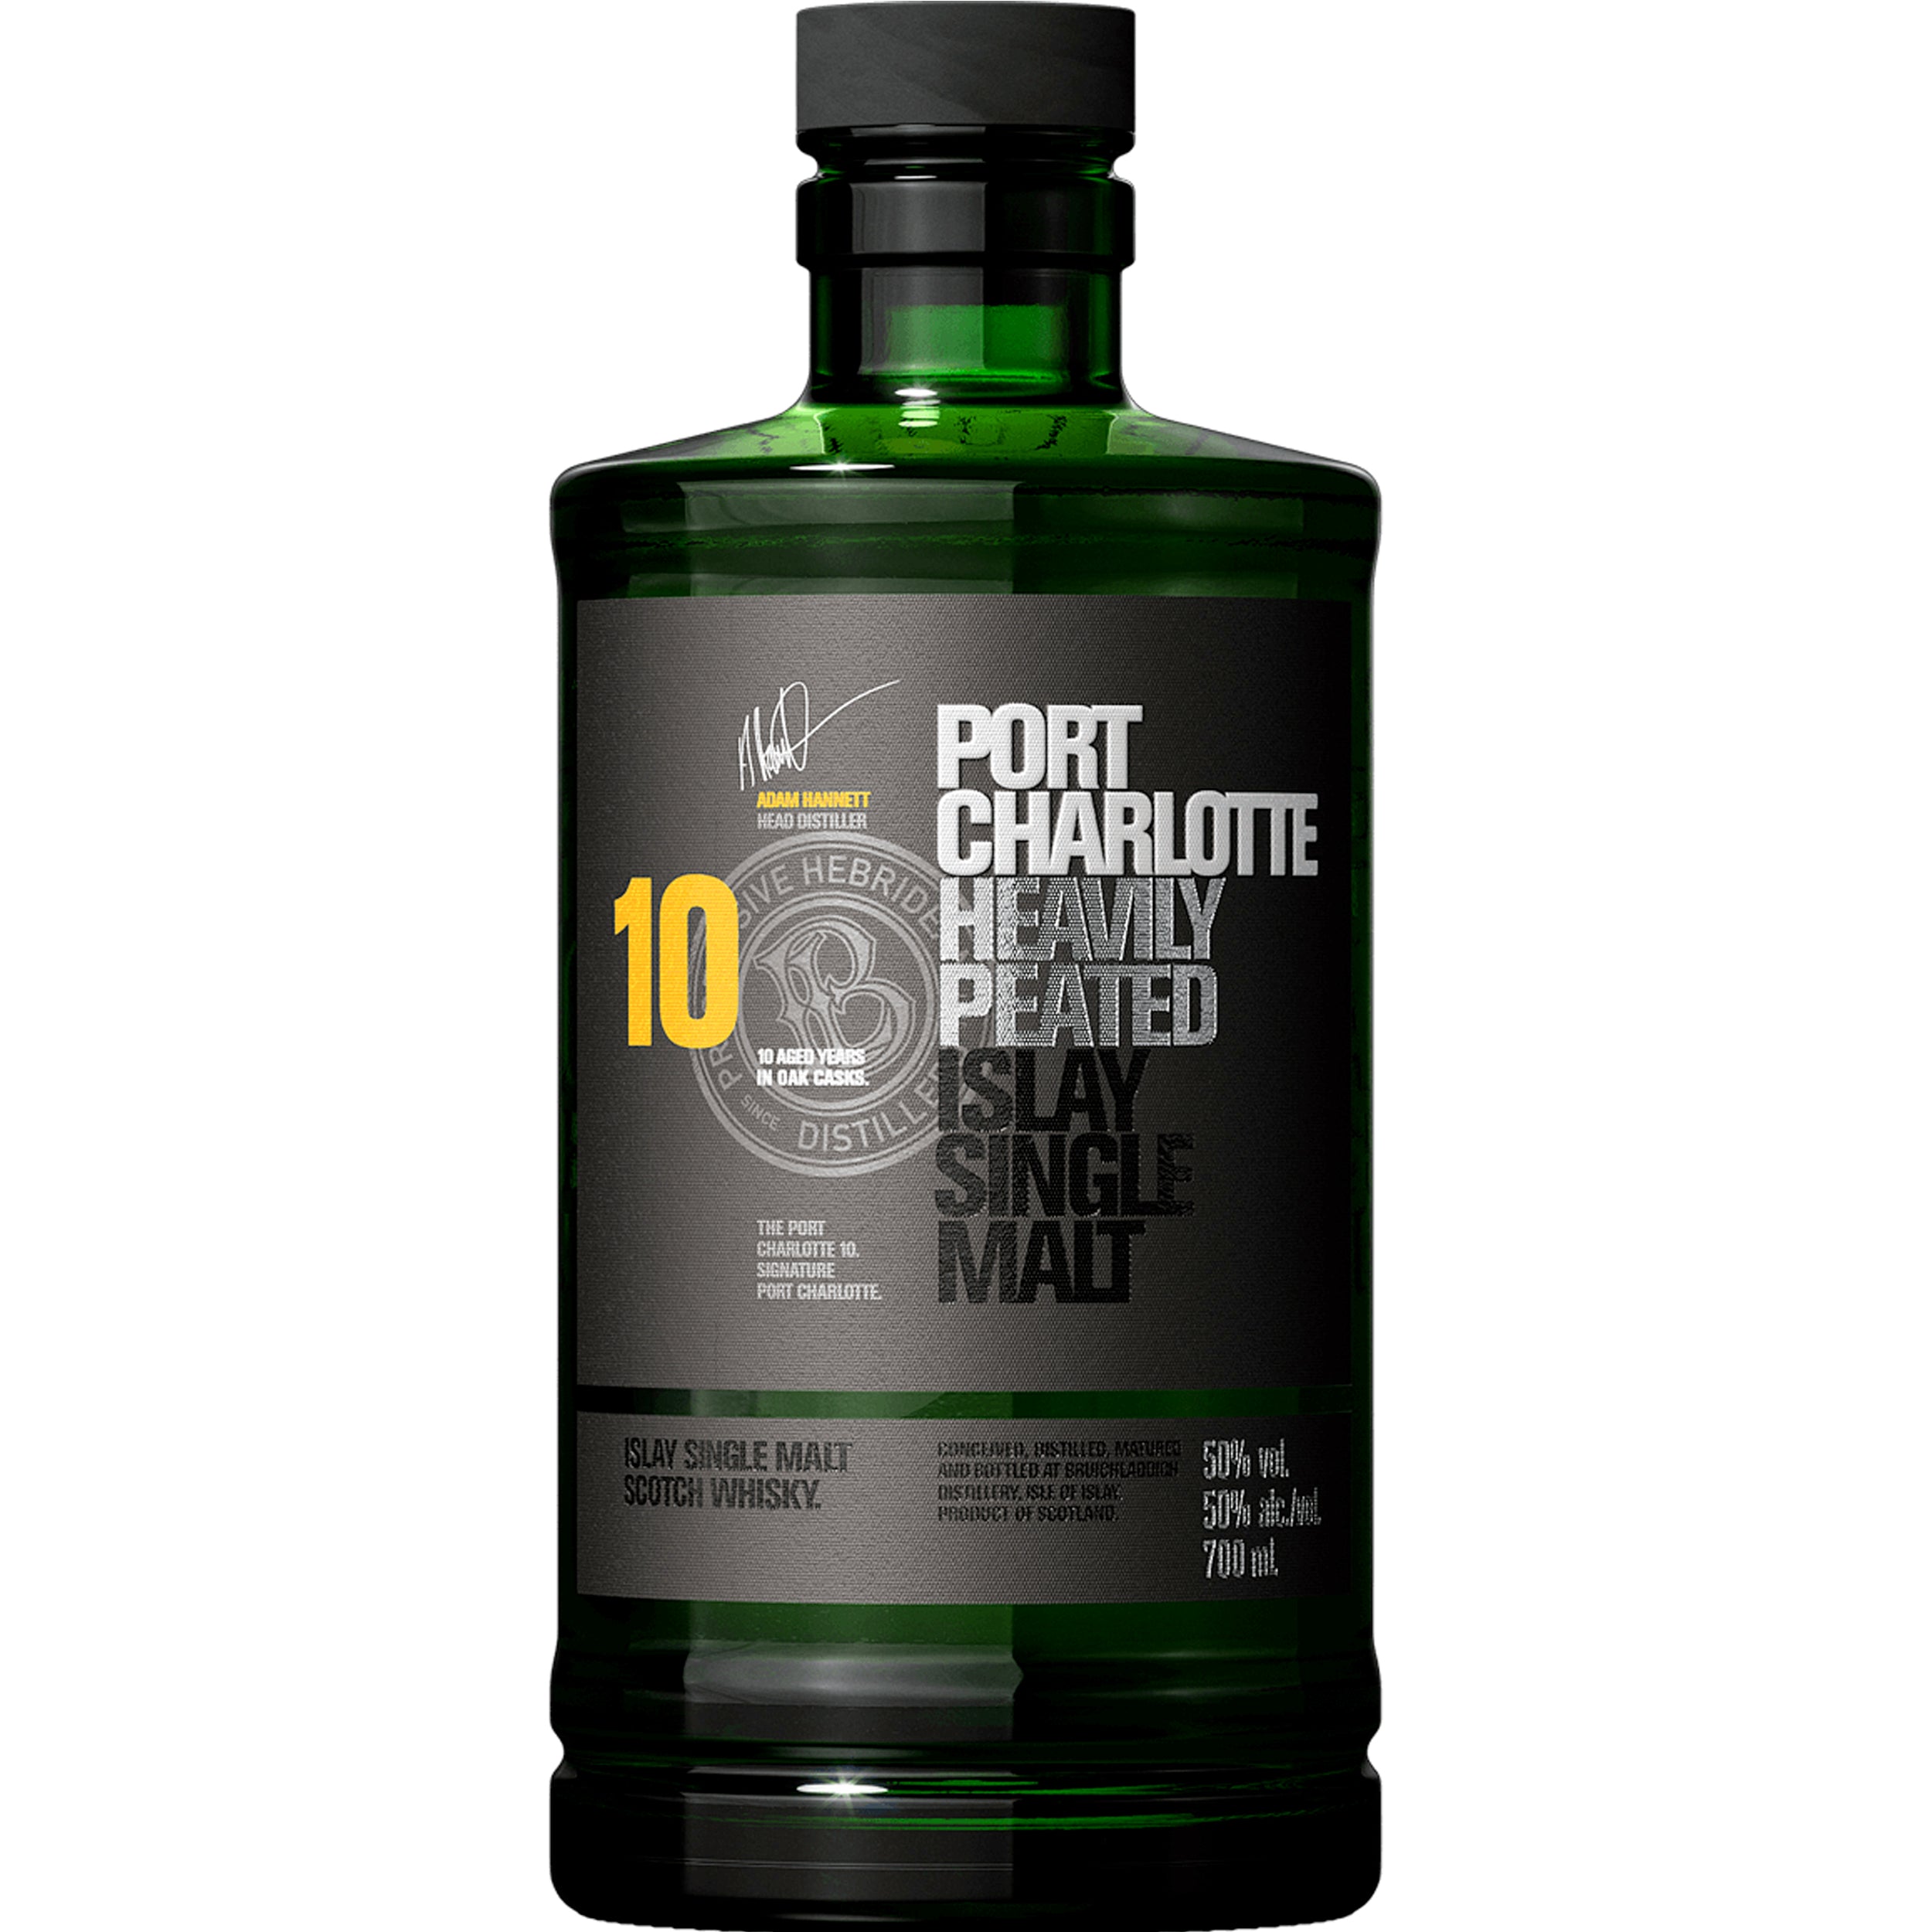 Bruichladdich Port Charlotte Islay Single Malt Scotch whisky 10Yr